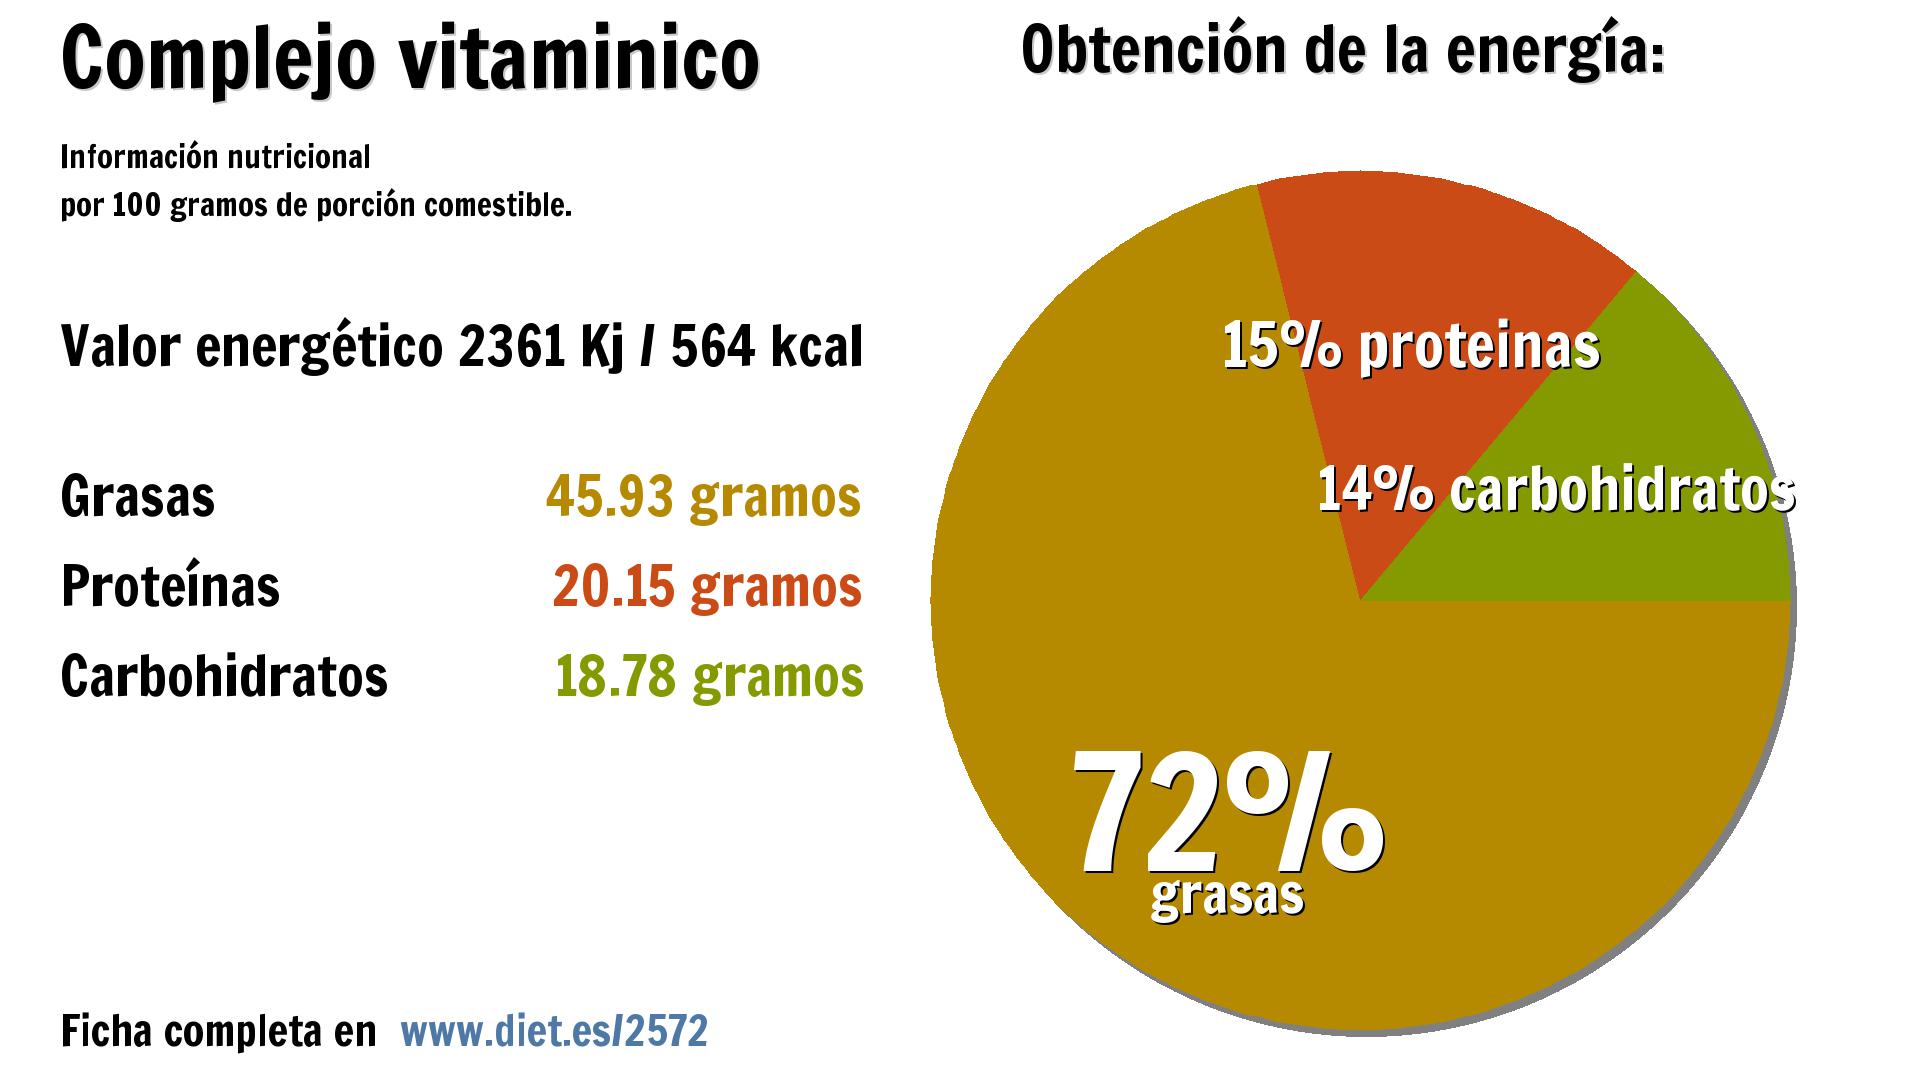 Complejo vitaminico: energía 2361 Kj, grasas 46 g., proteínas 20 g. y carbohidratos 19 g.